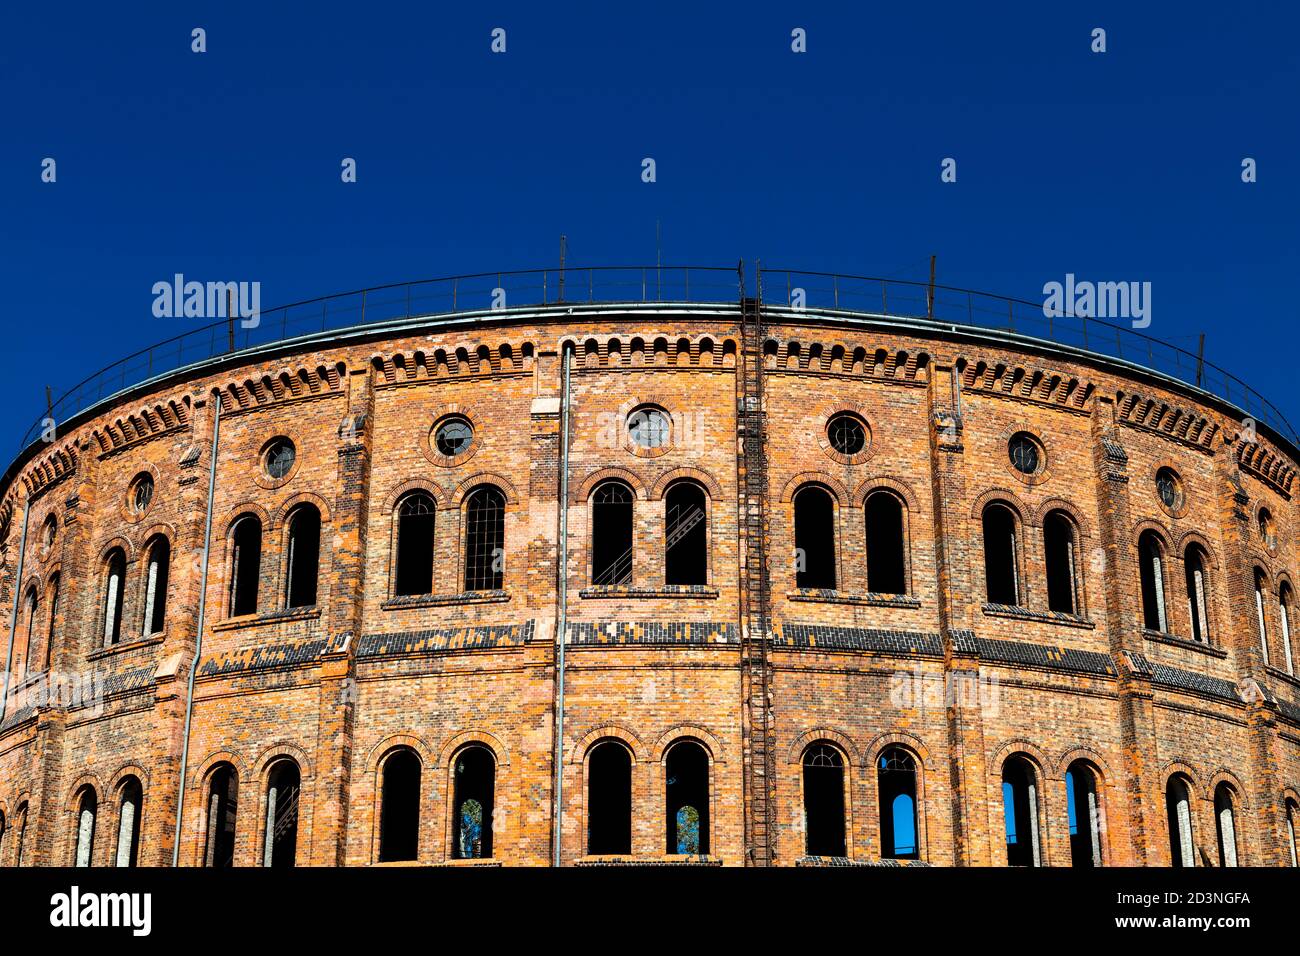 Außenansicht von Wolskie Rotundy - altes Gasholder-Gebäude in Wola, Warschau, Polen Stockfoto